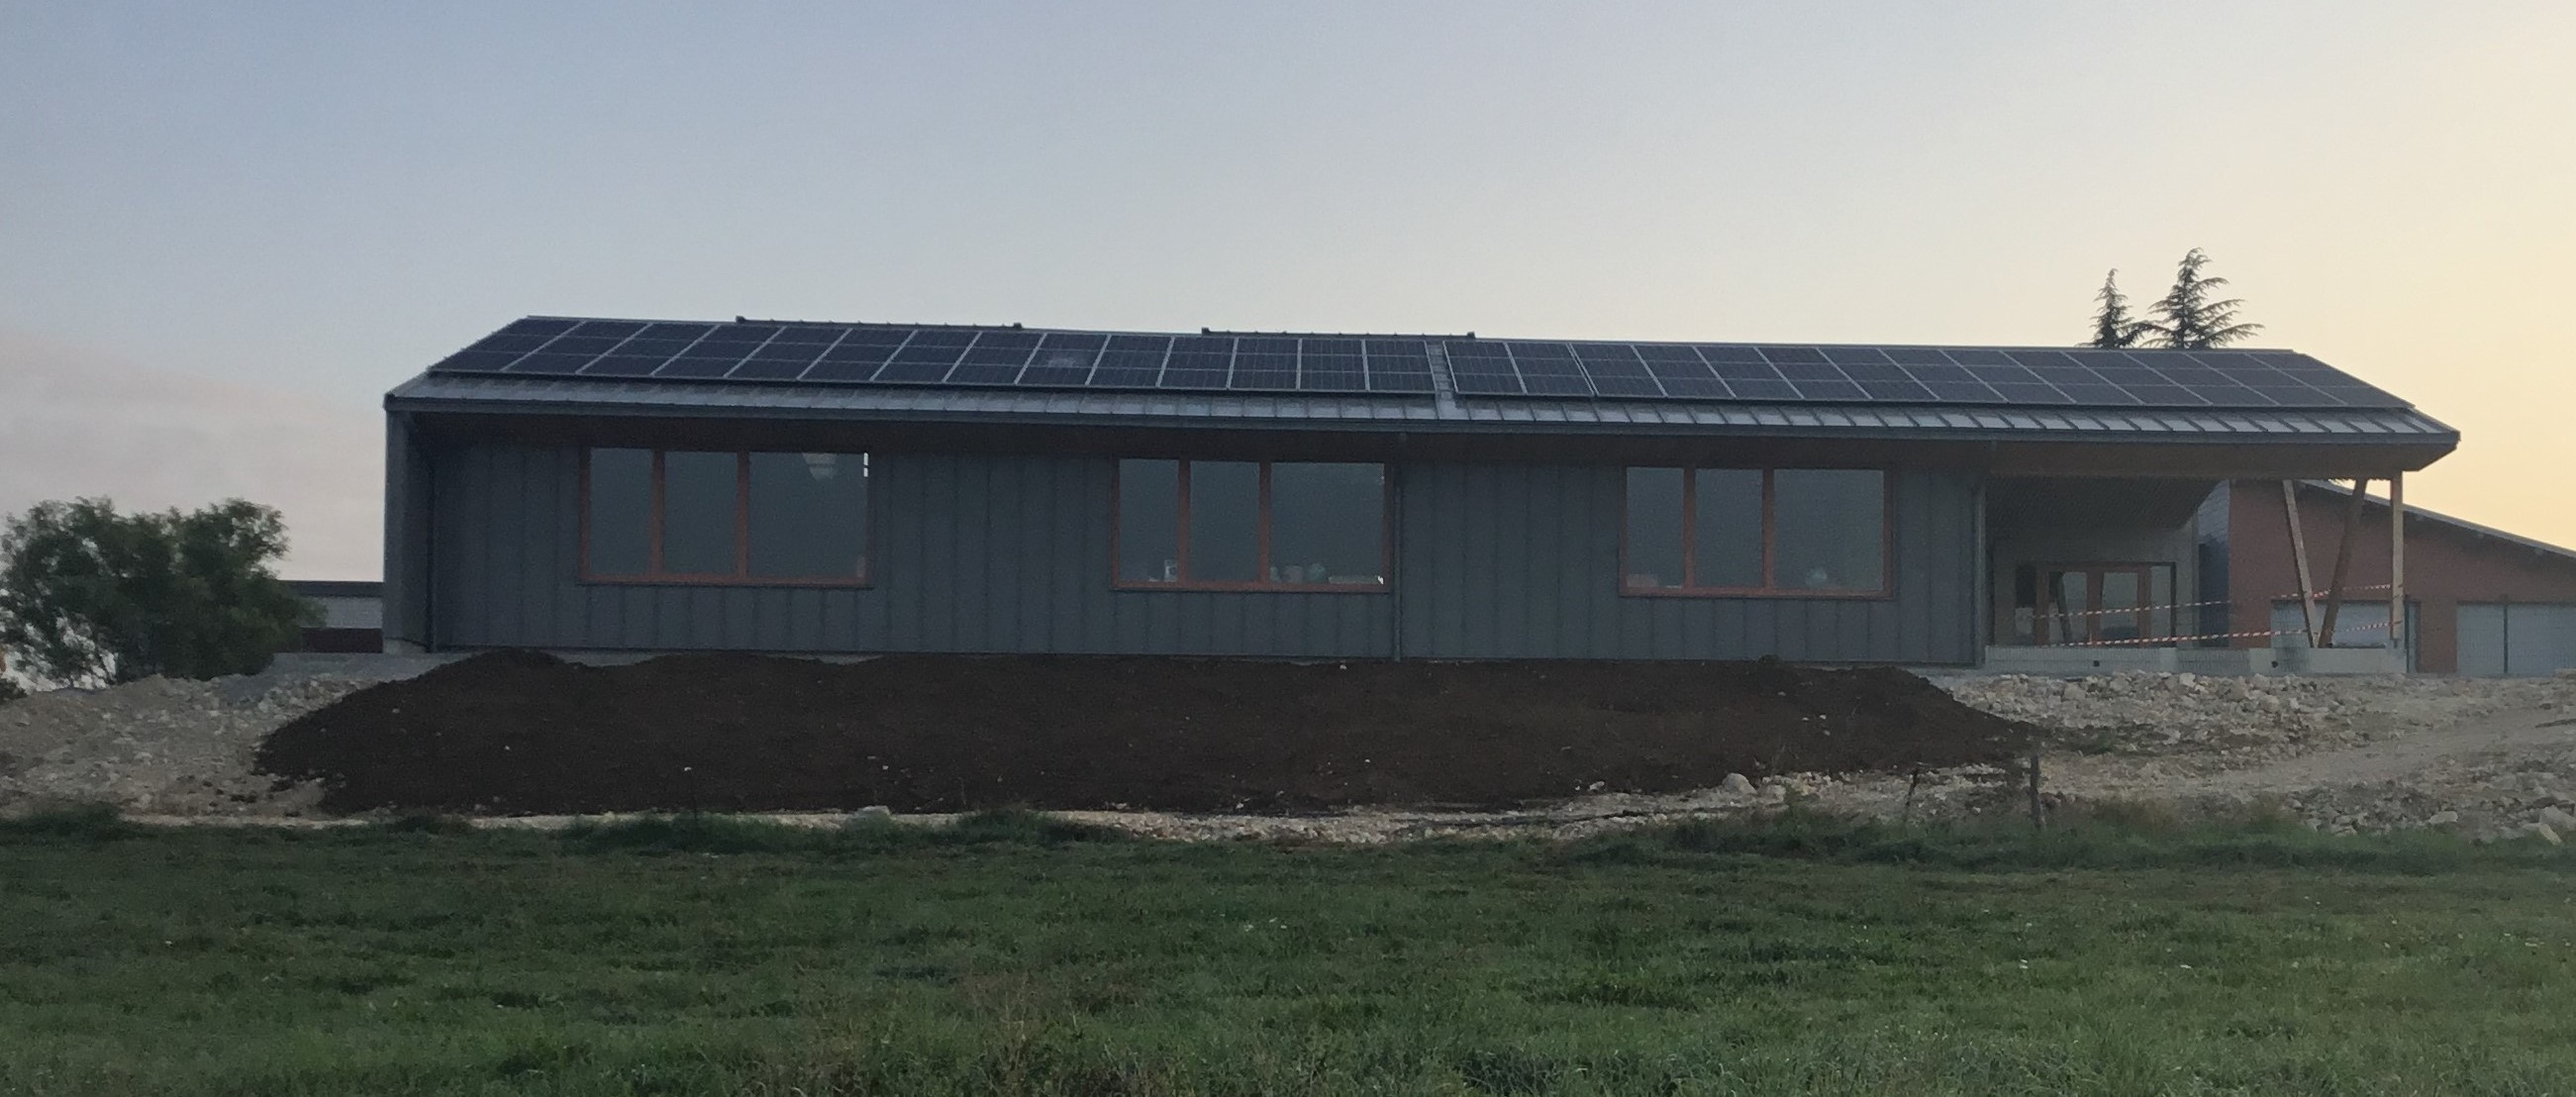 école communauté de communes loue lison photovoltaïque